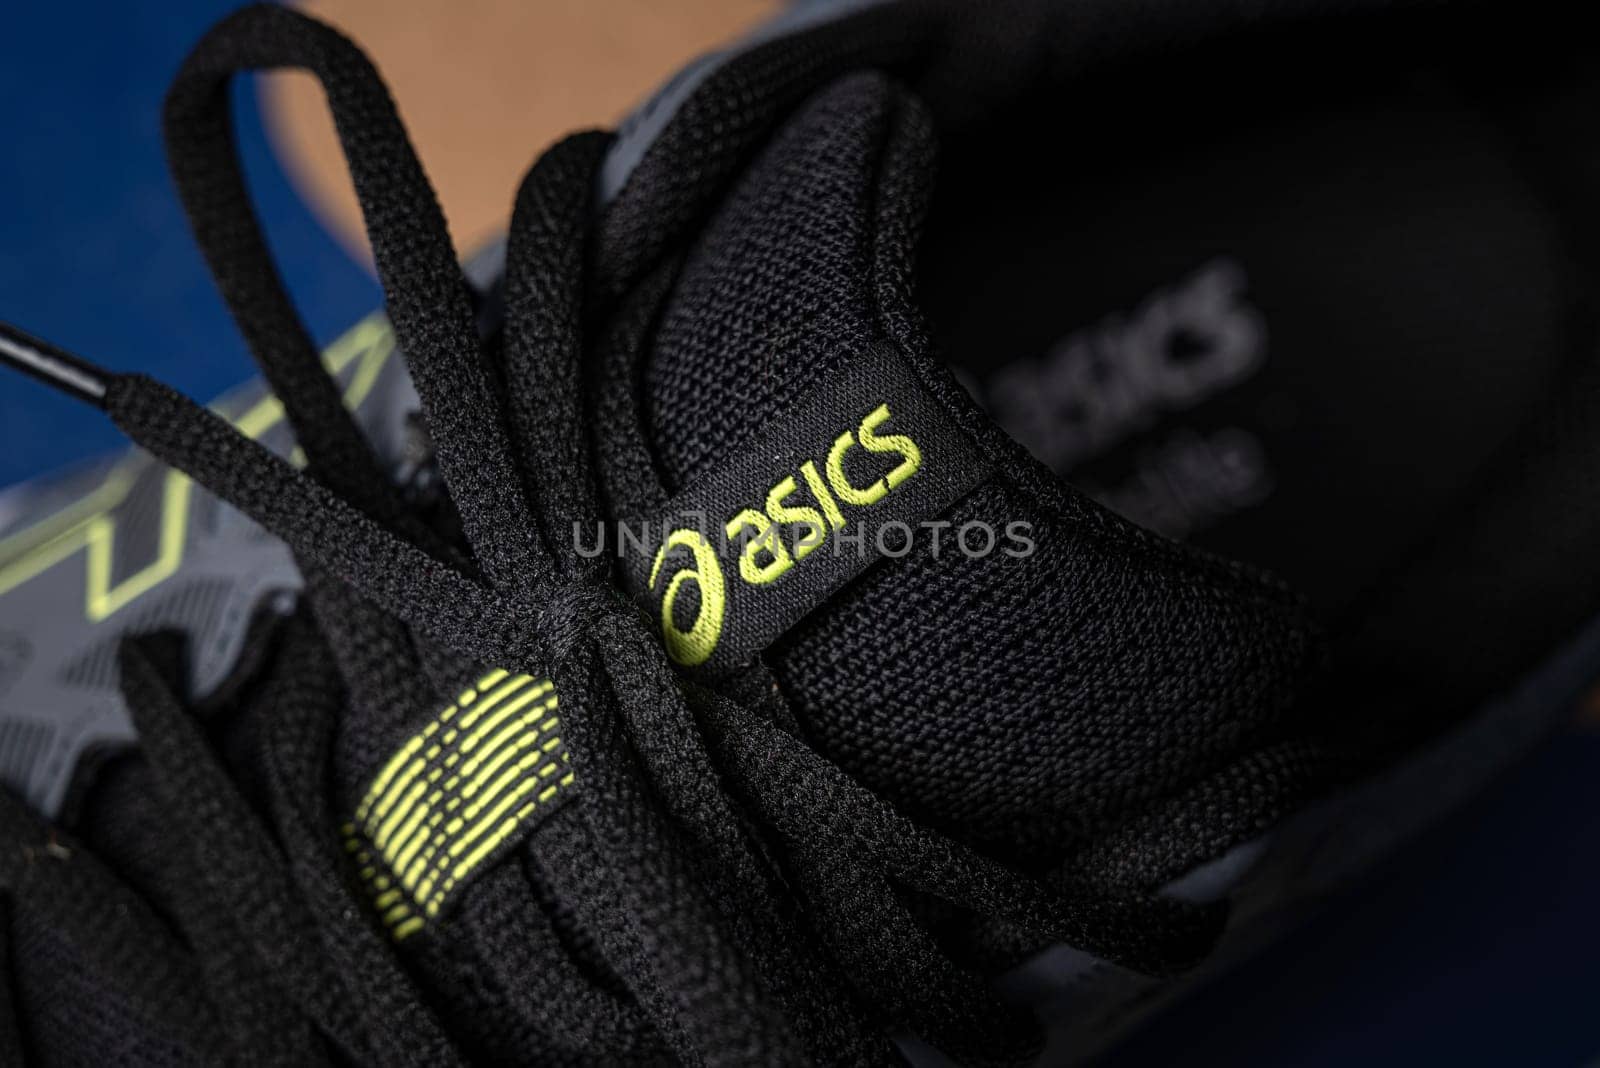 Antalya, Turkey - November 28, 2023: Close-up of the logo on Asics running shoes